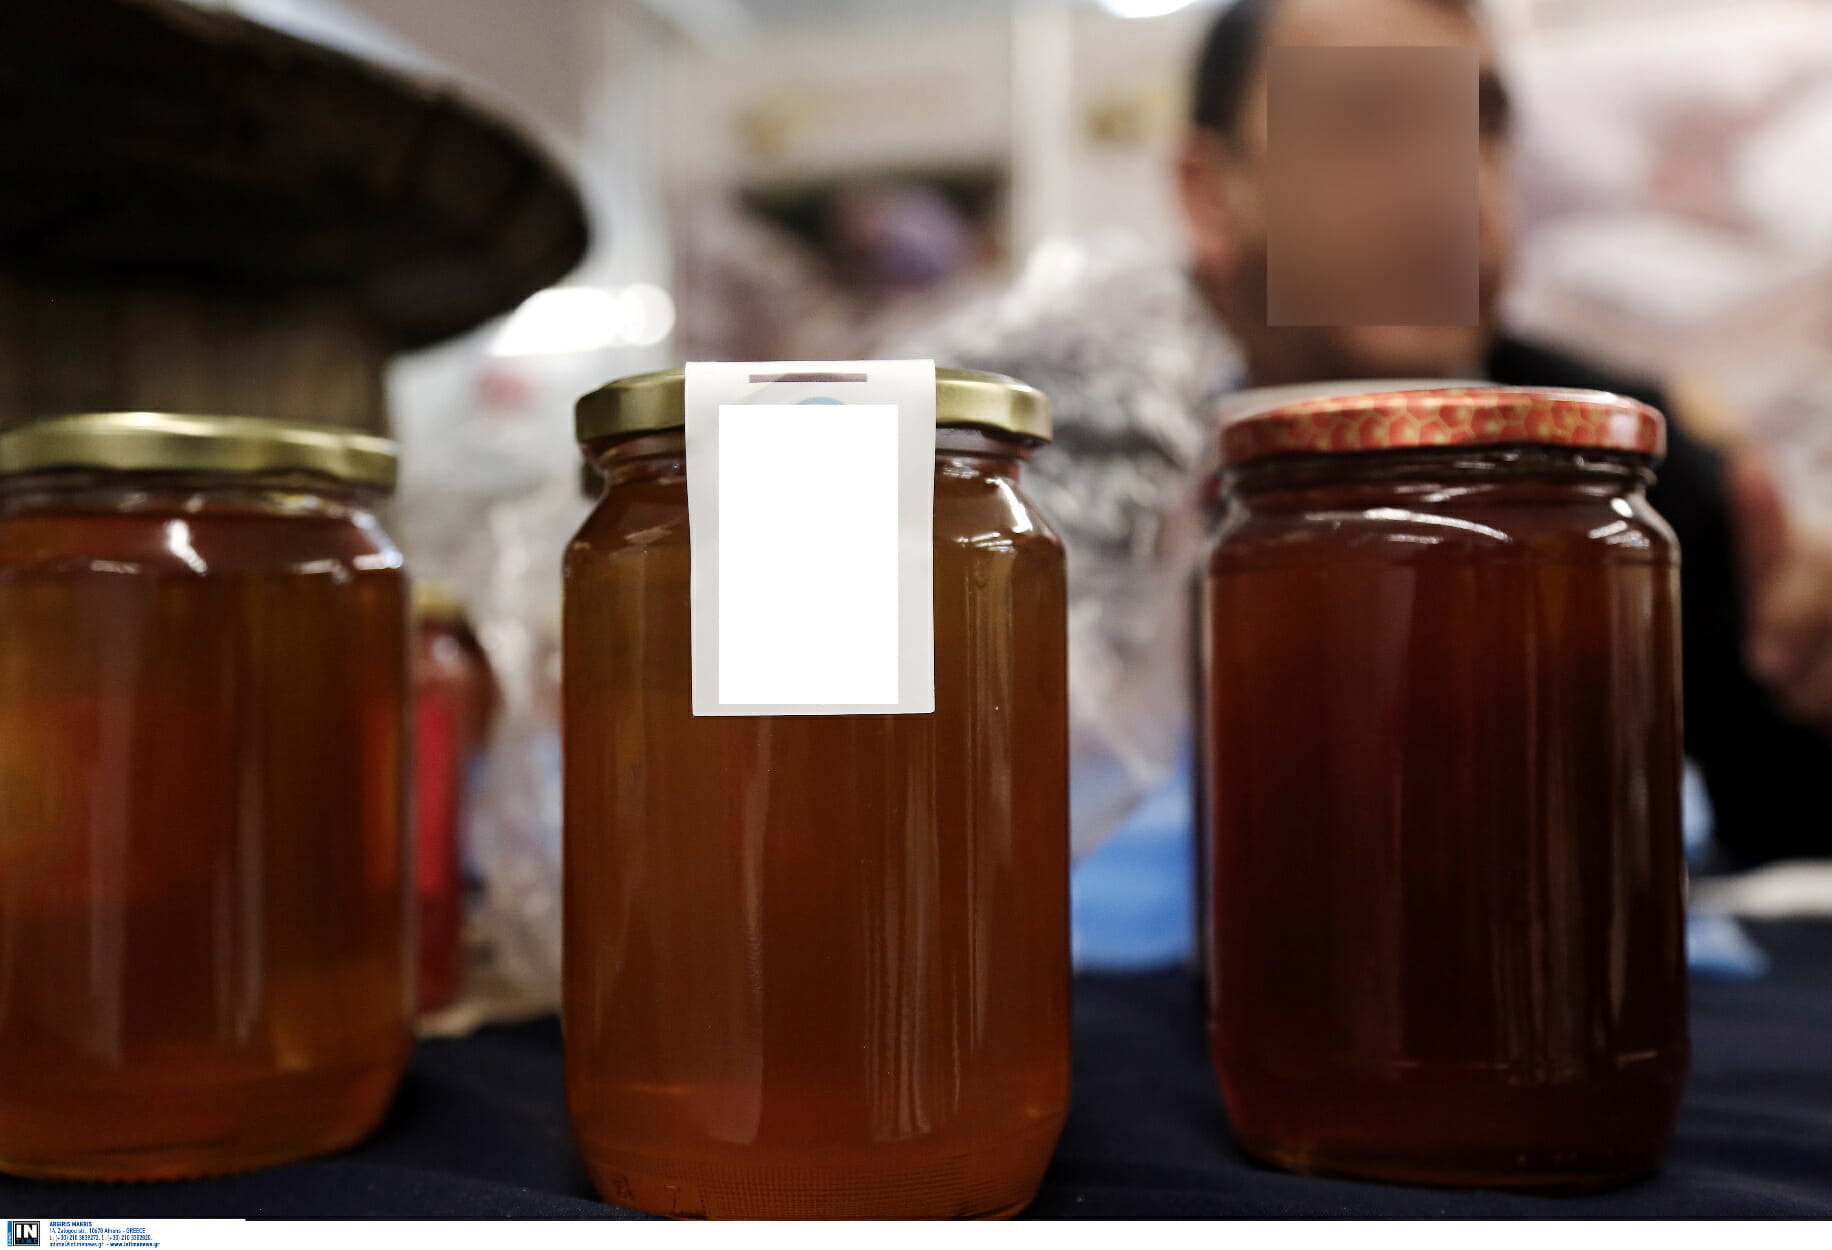 Προσοχή! Μην καταναλώσετε αυτό το μέλι εάν το έχετε αγοράσει – Το αποσύρει ο ΕΦΕΤ (pics)